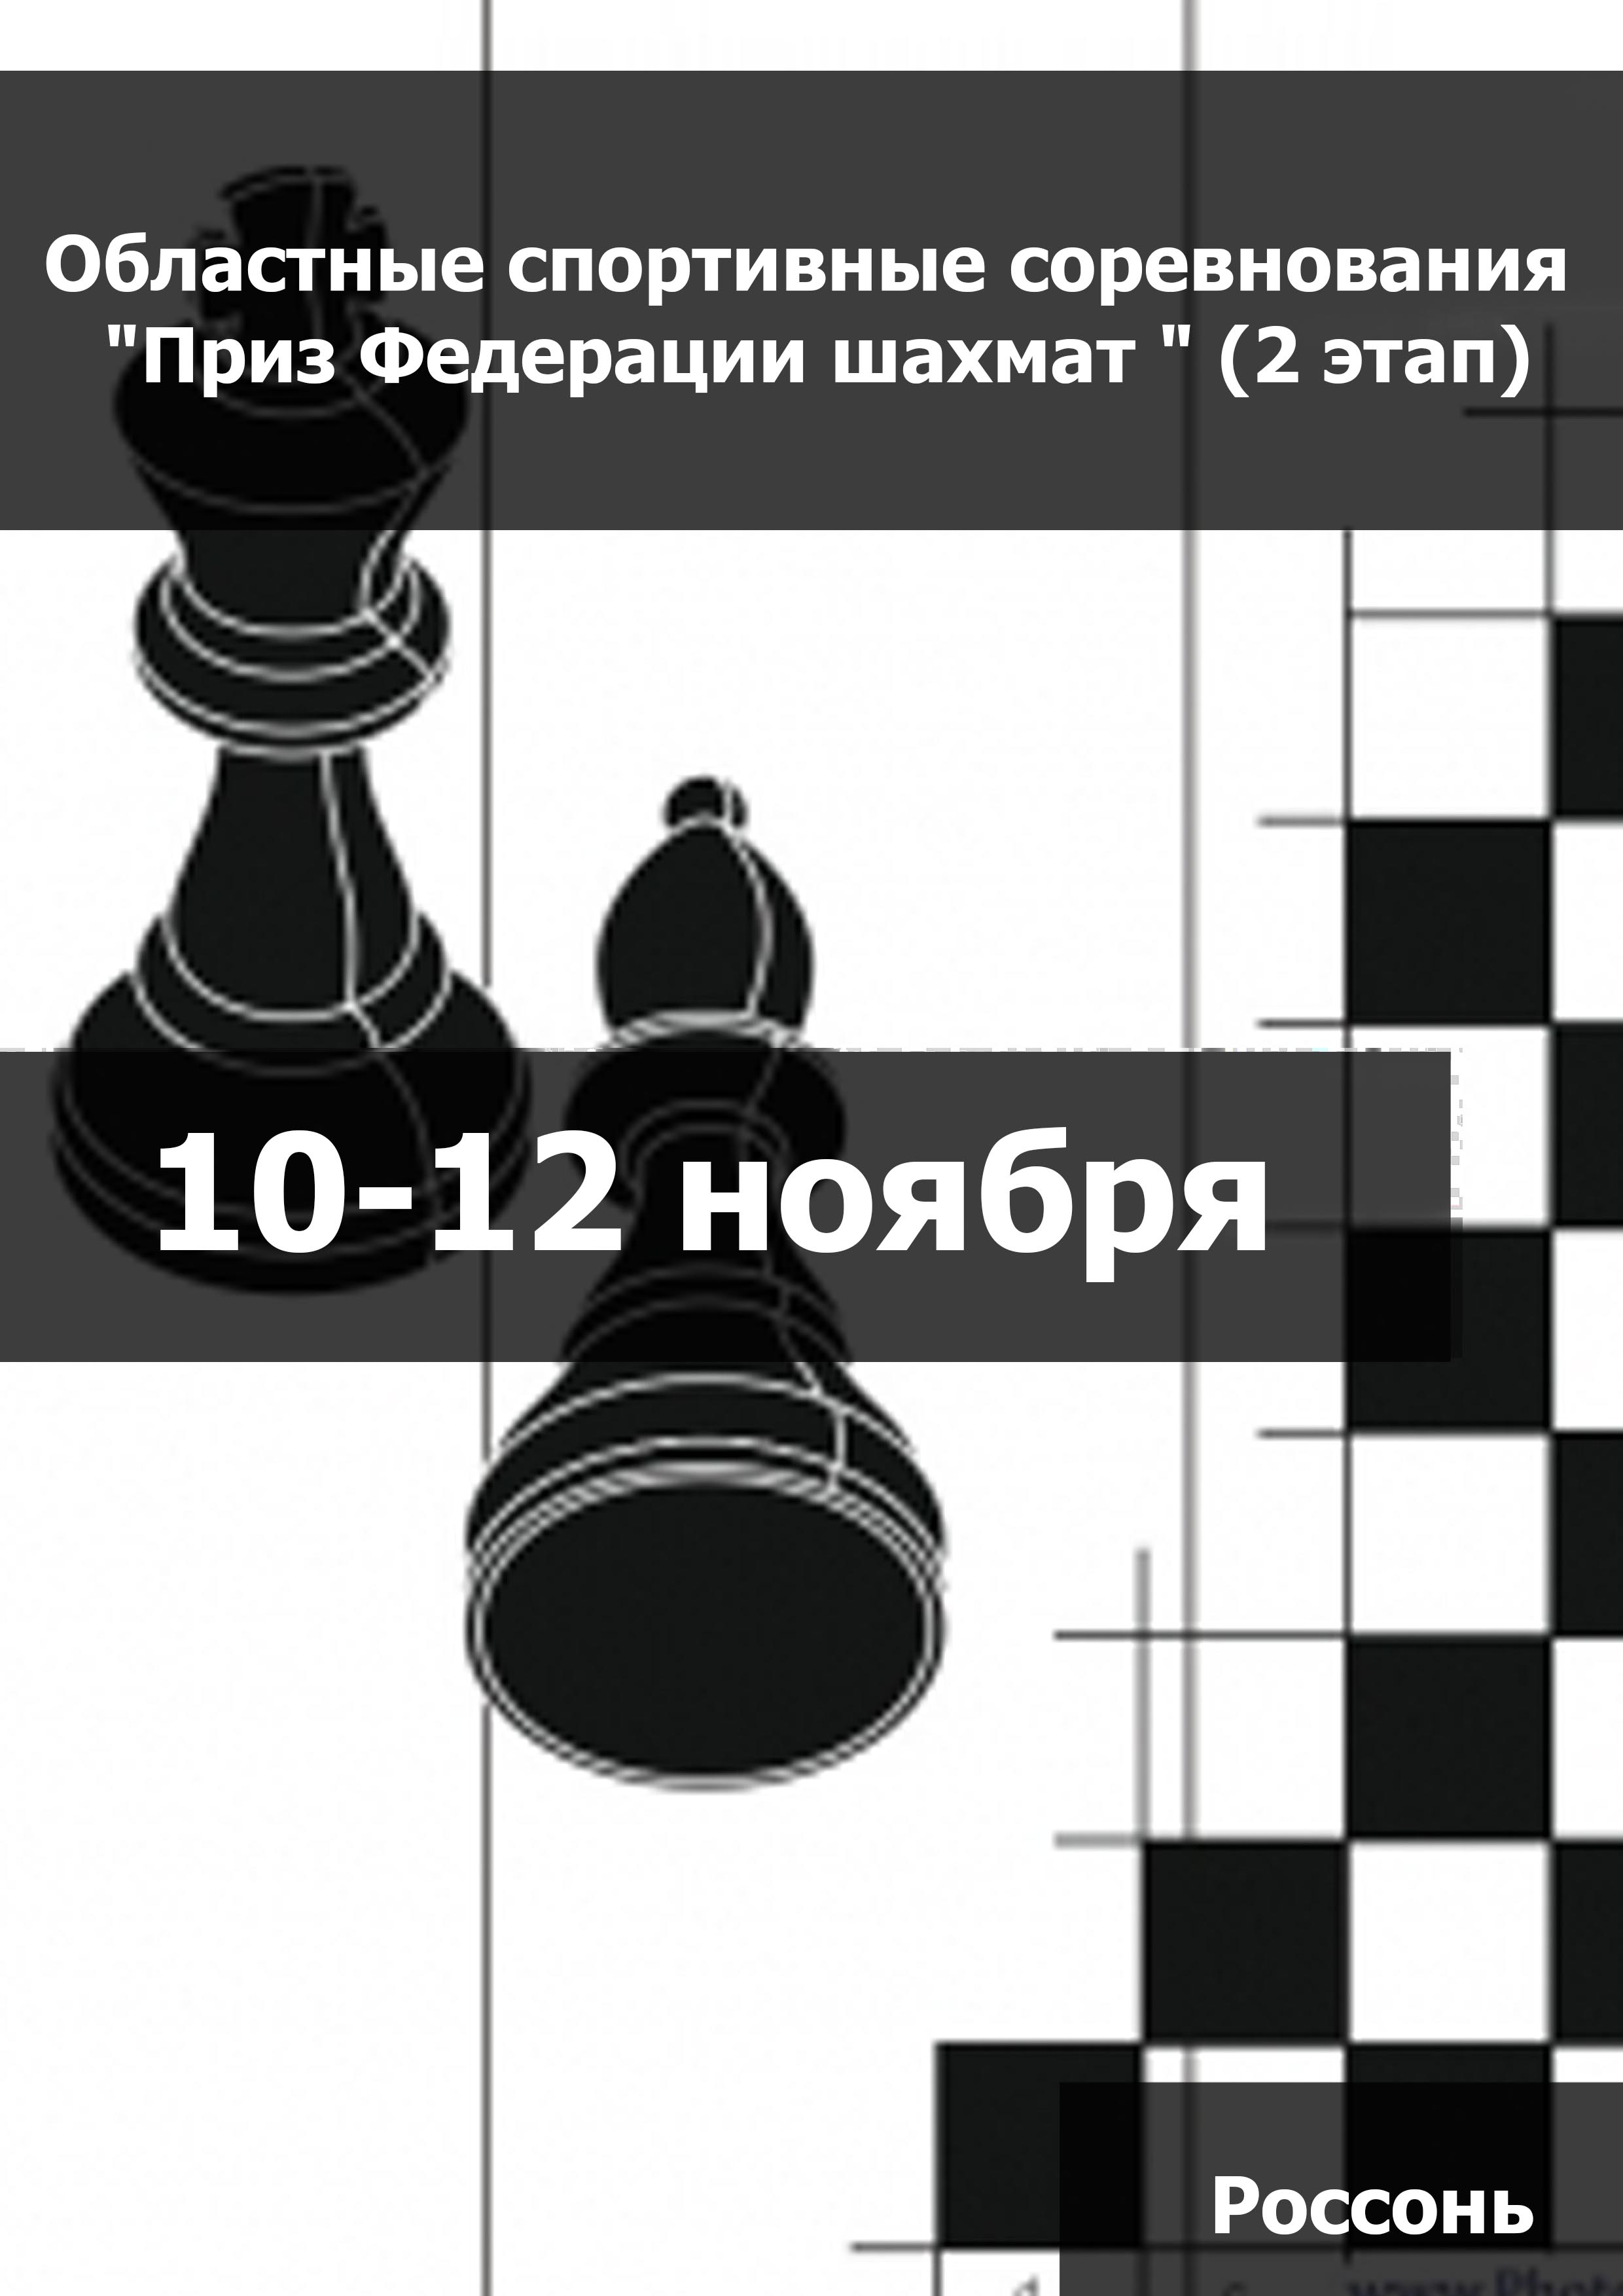 Областные спортивные соревнования "Приз Федерации шахмат " (2 этап) (мальчики, девочки до 11 лет) 10  월요
 2023  년도
 